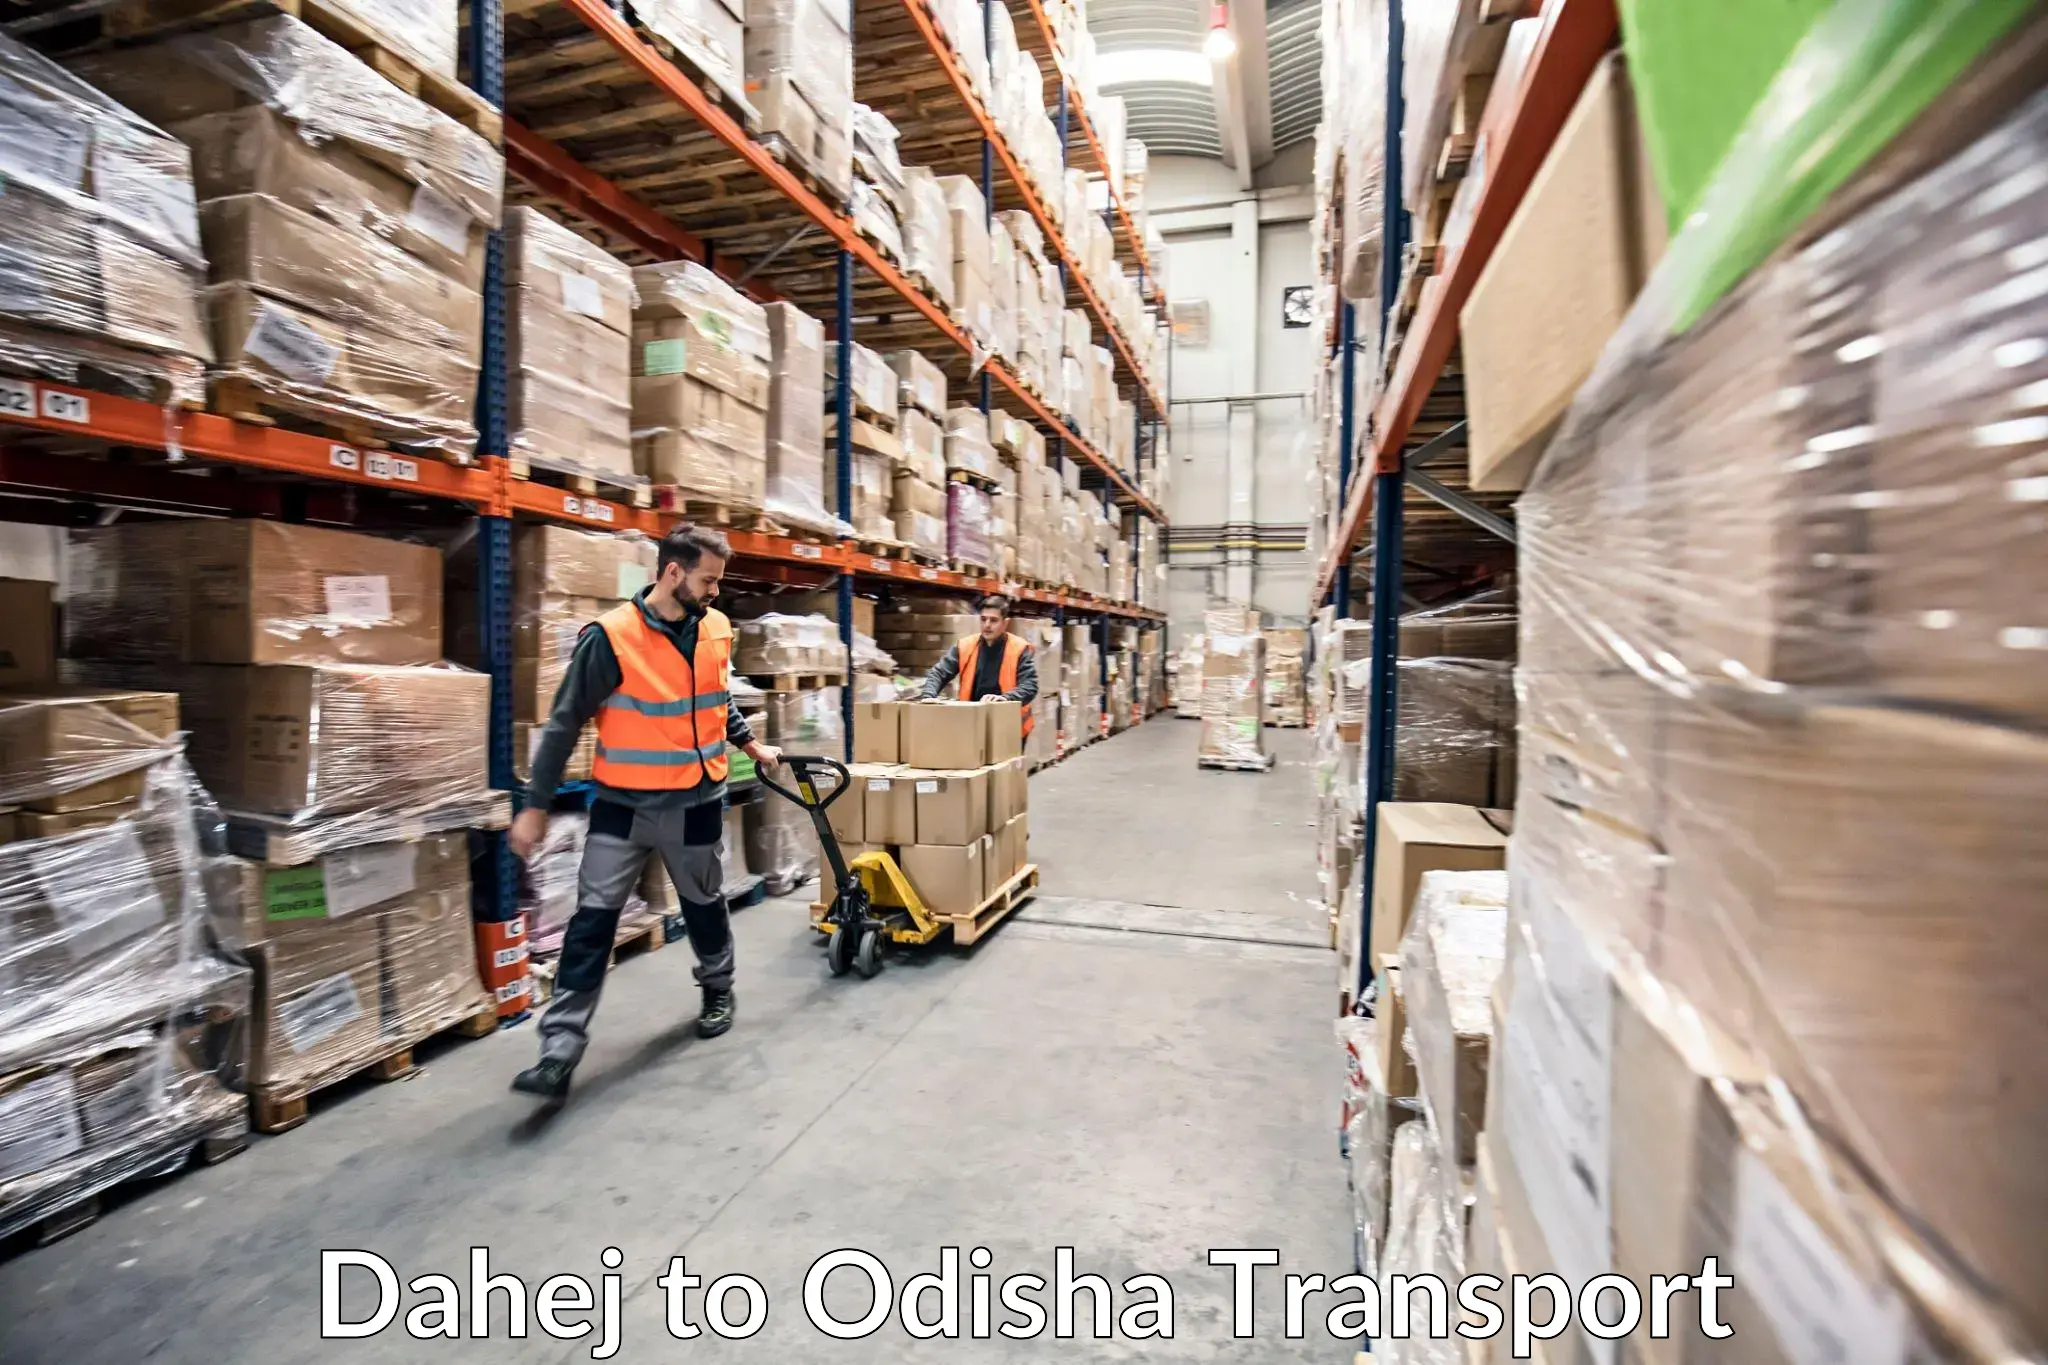 Cargo transport services Dahej to Paradip Port